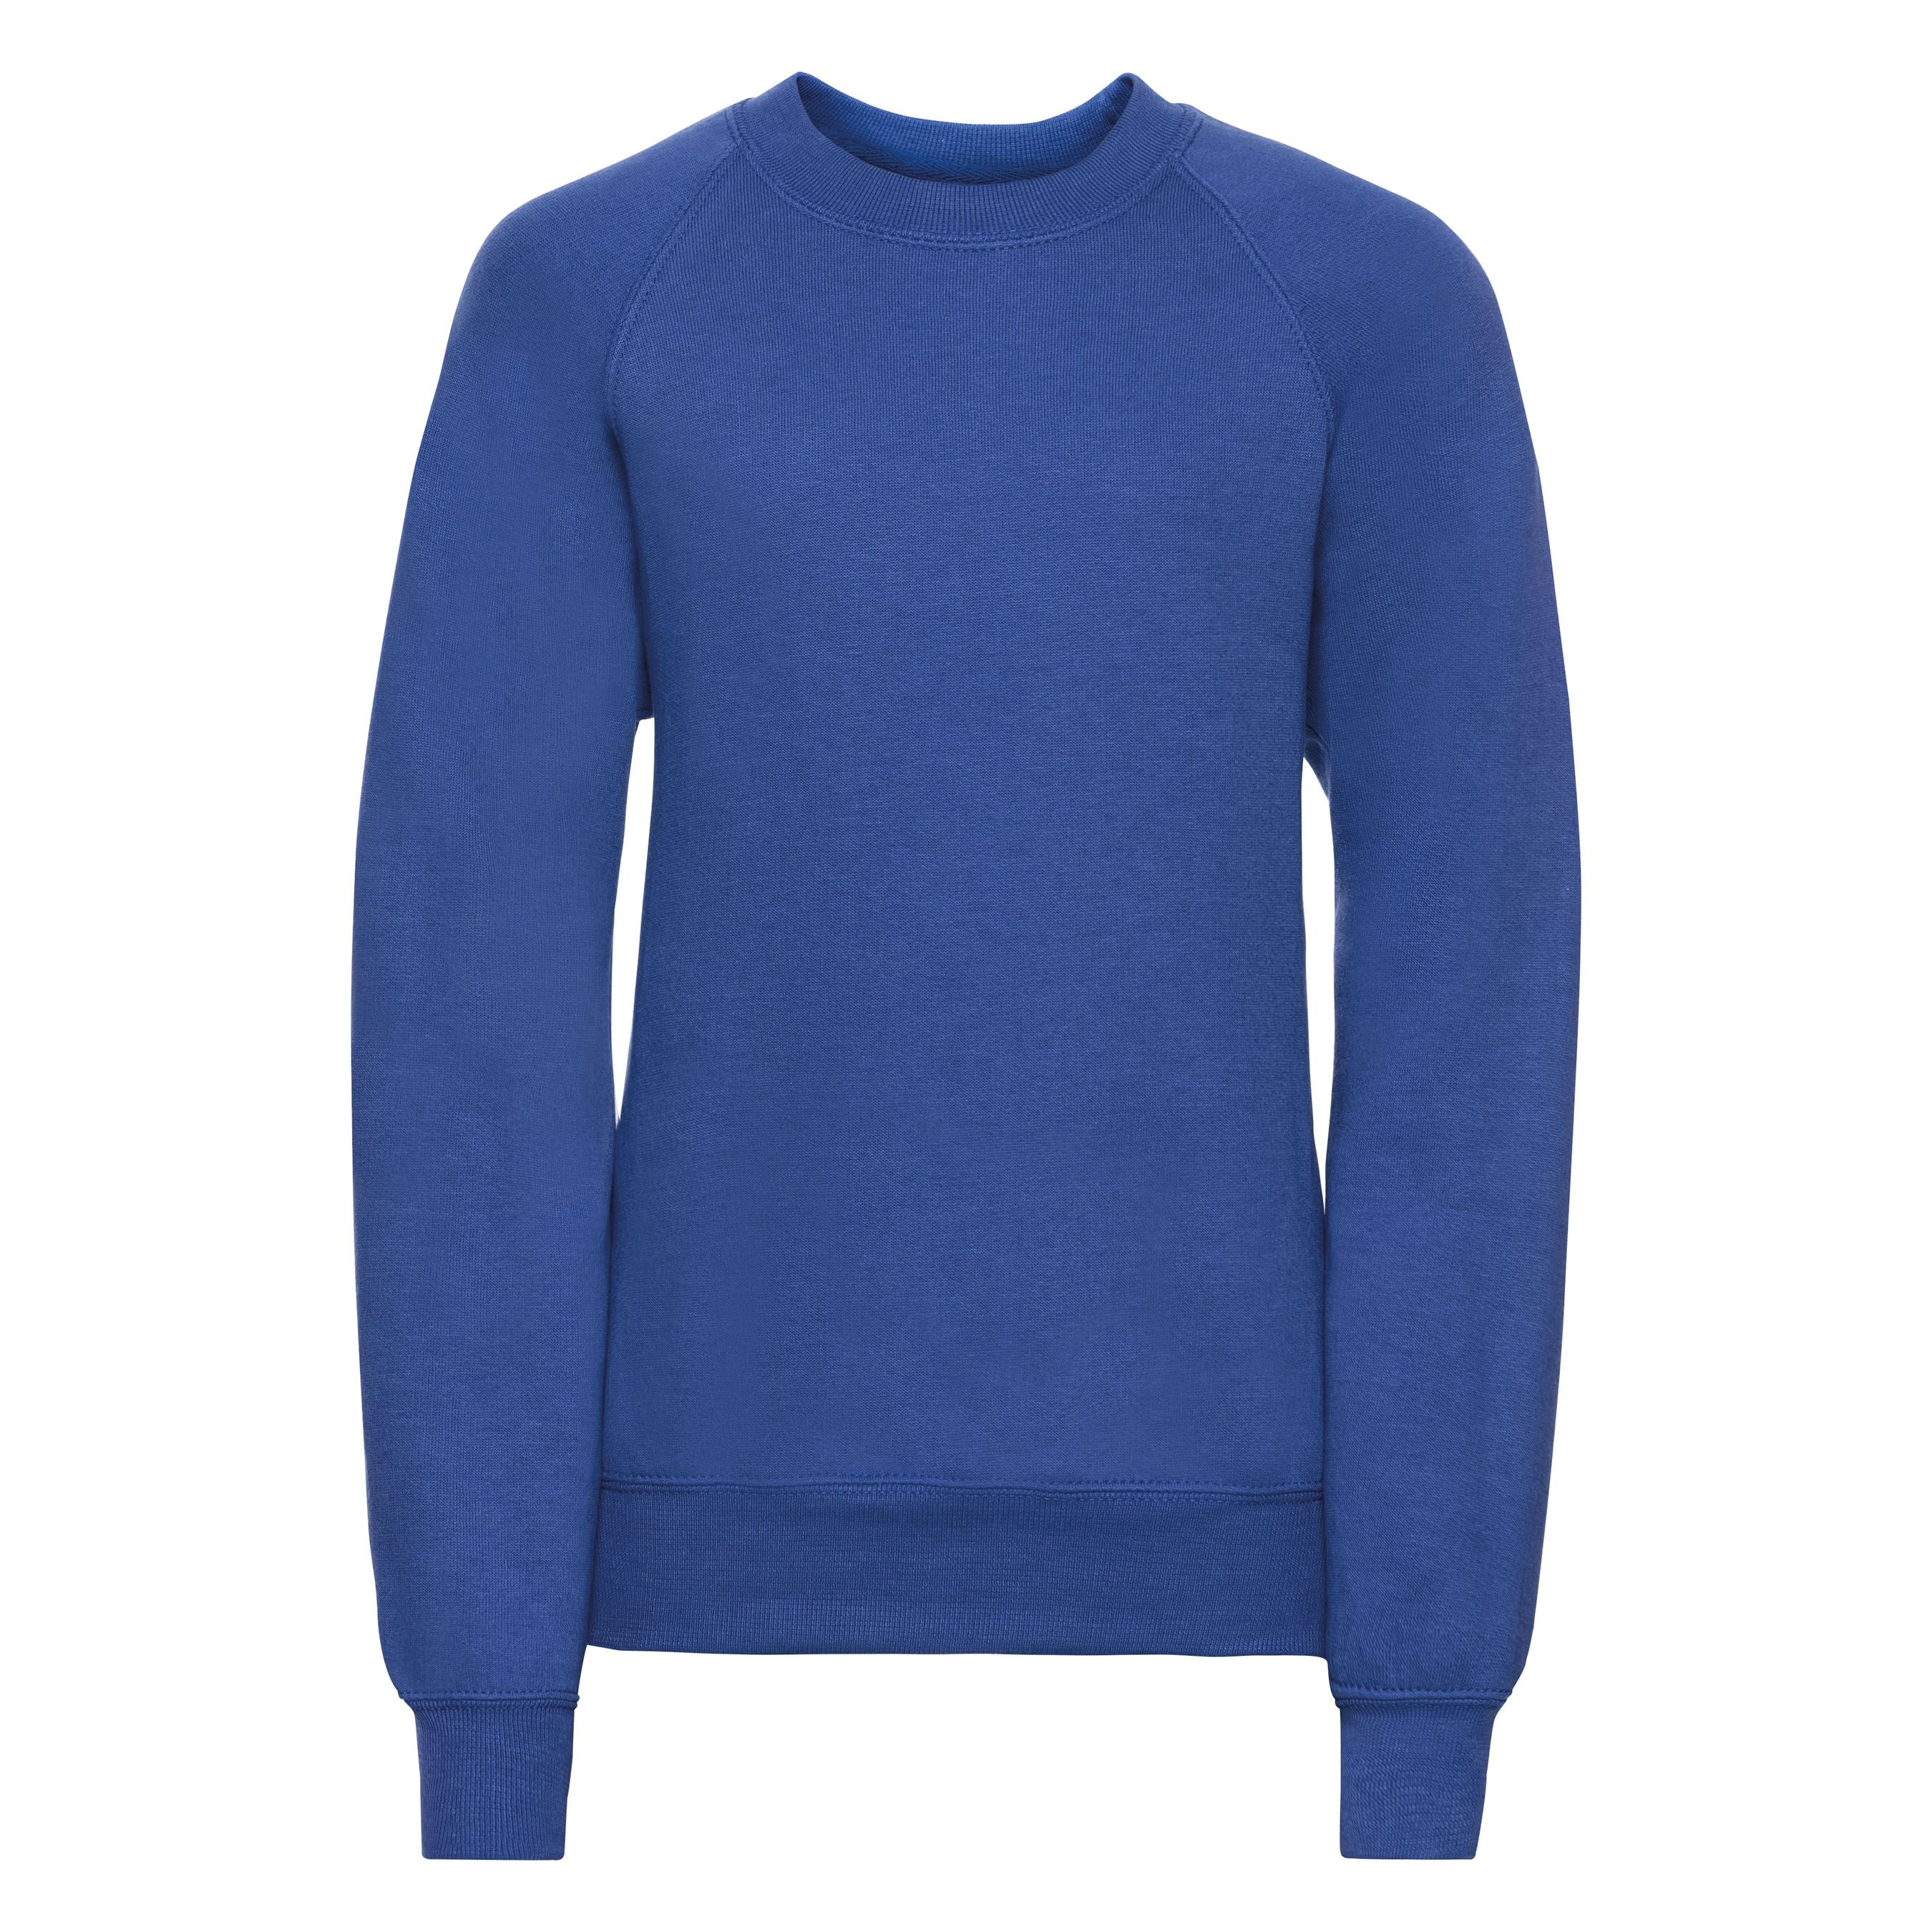 Children's raglan sleeve sweatshirt - Bright Blue